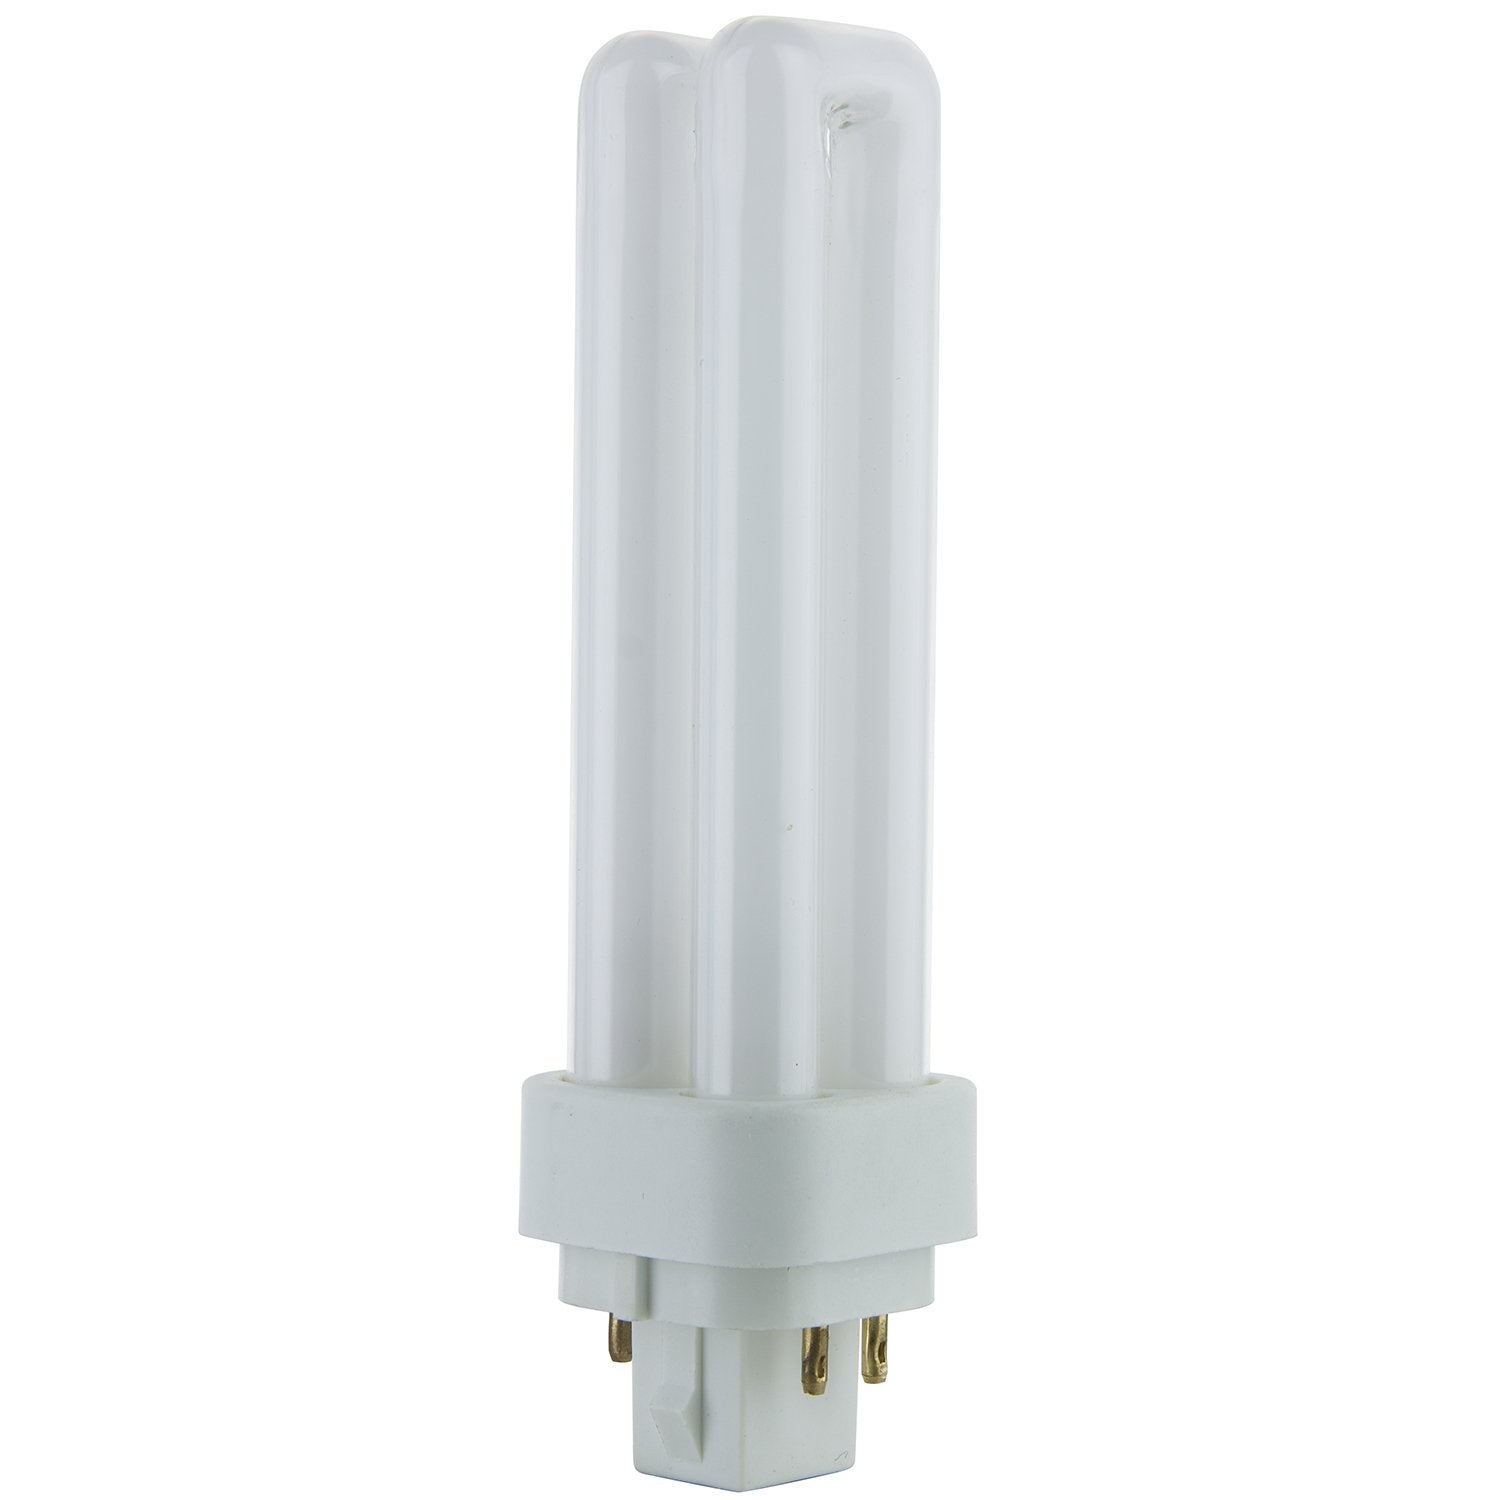 Sunlite 13-Watt Compact Fluorescent Plug-in 4-Pin Light Bulb  - Very Good